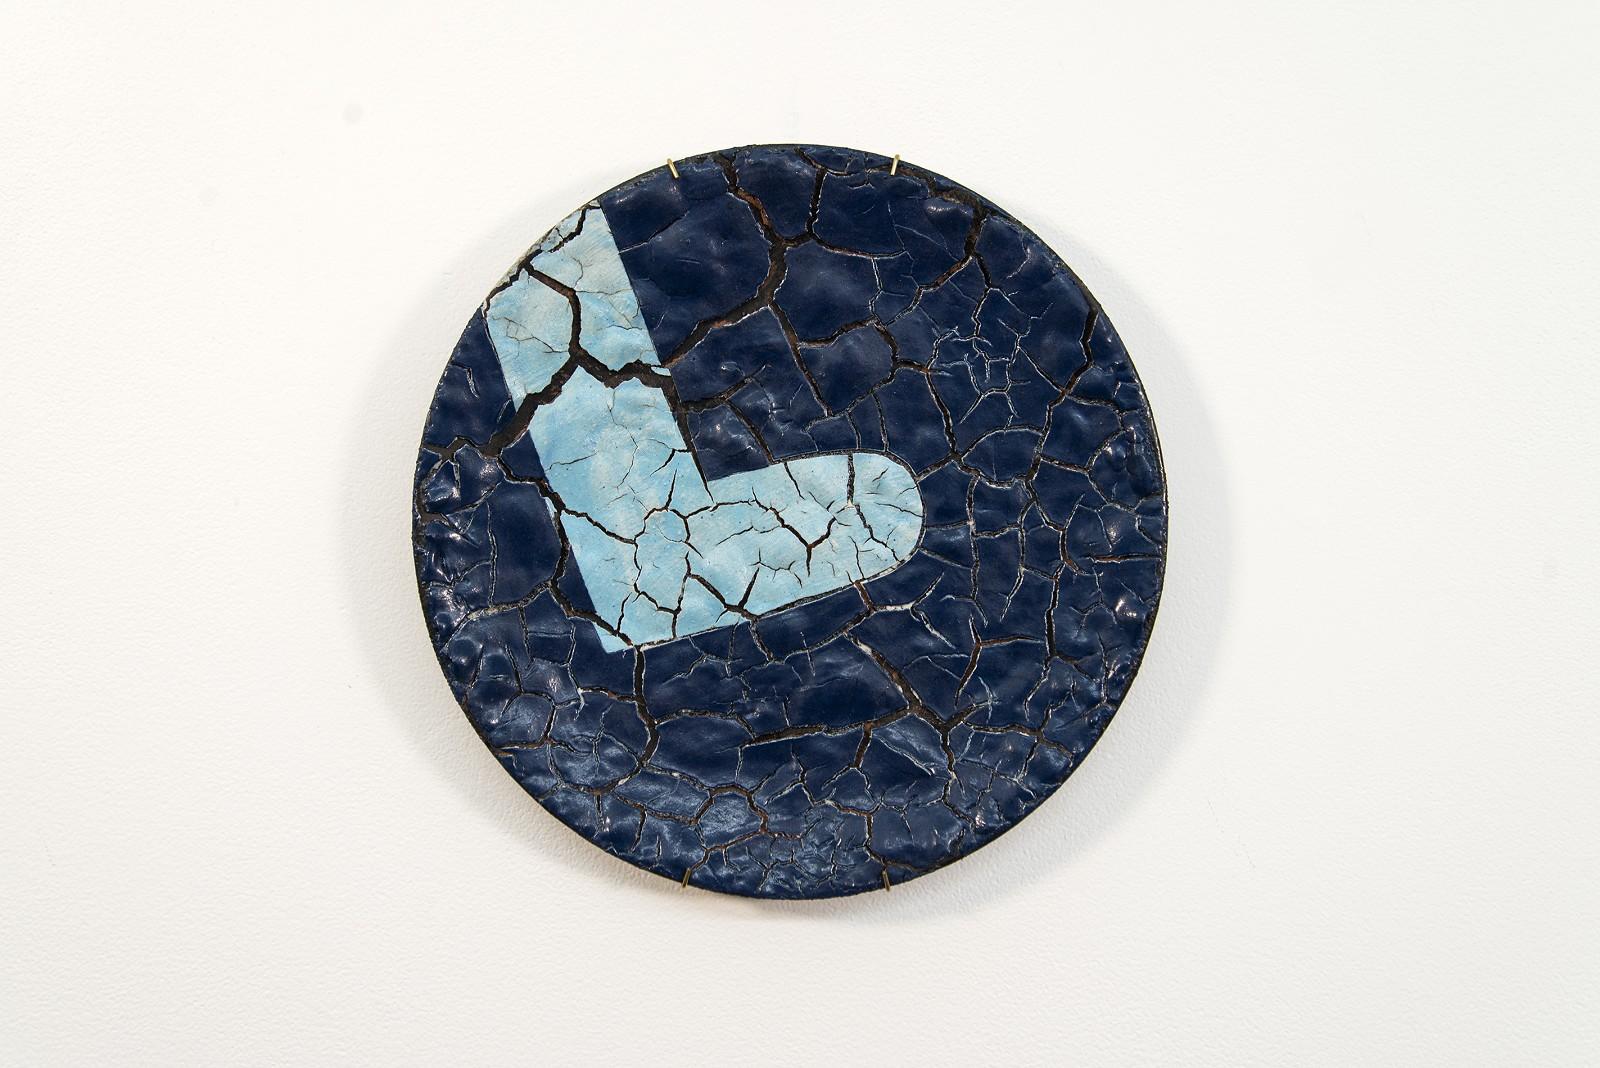 Steven Heinemann Abstract Sculpture - TP No 2 - blue, textured, ceramic, wall mounted circular sculpture